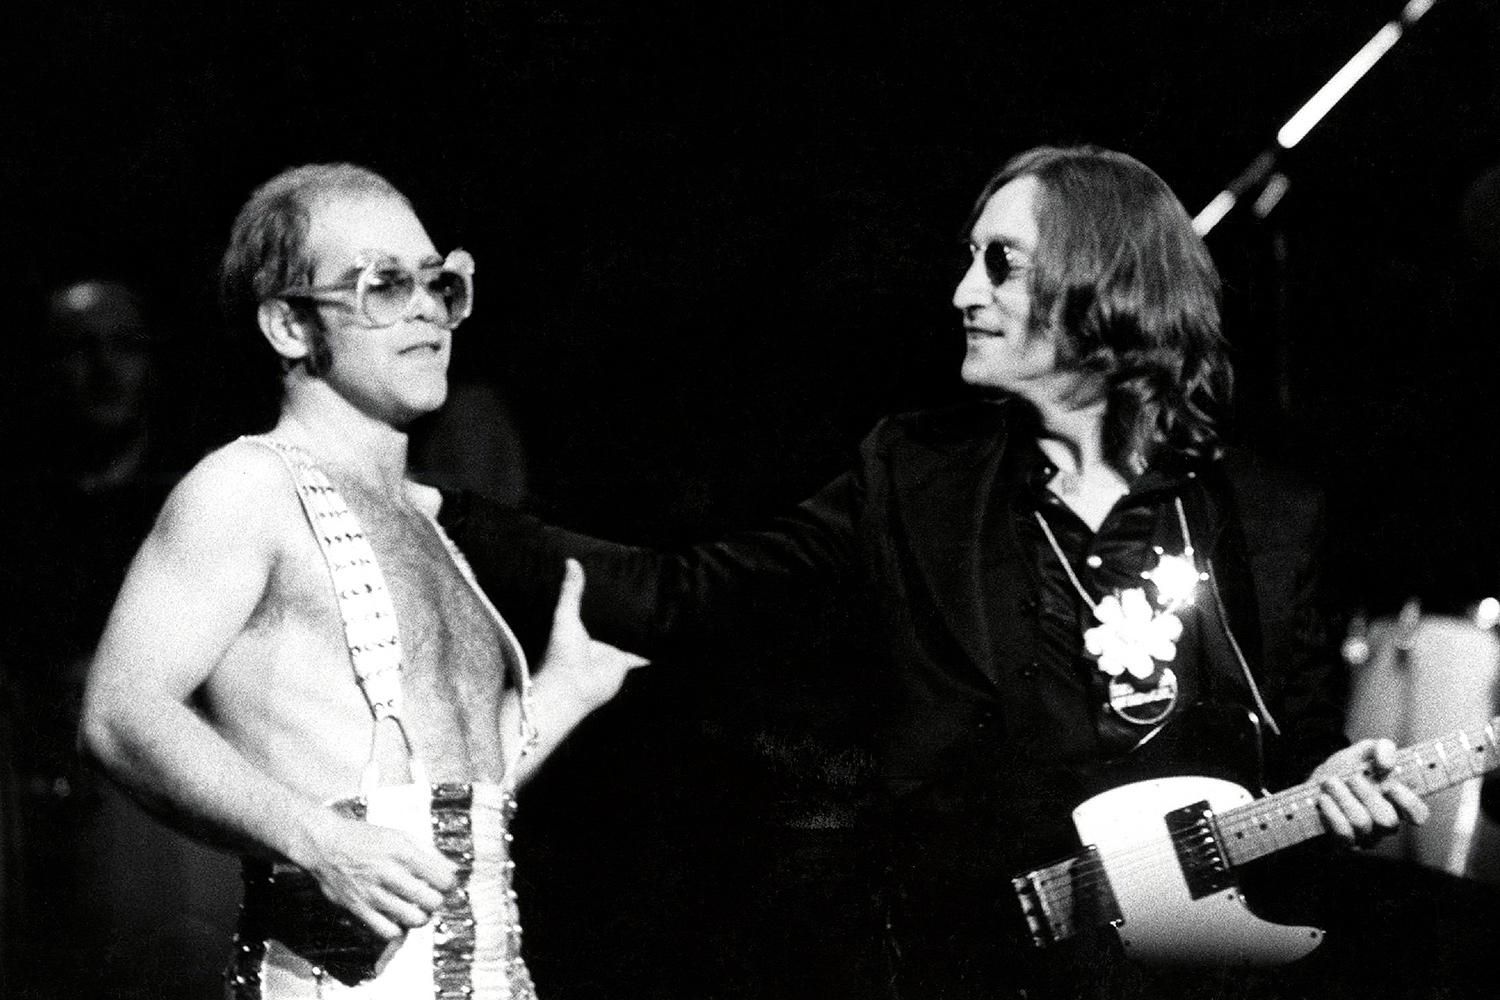 Один із найчарівніших моментів у моєму житті, – Елтон Джон про виступ з Джоном Ленноном - Афіша